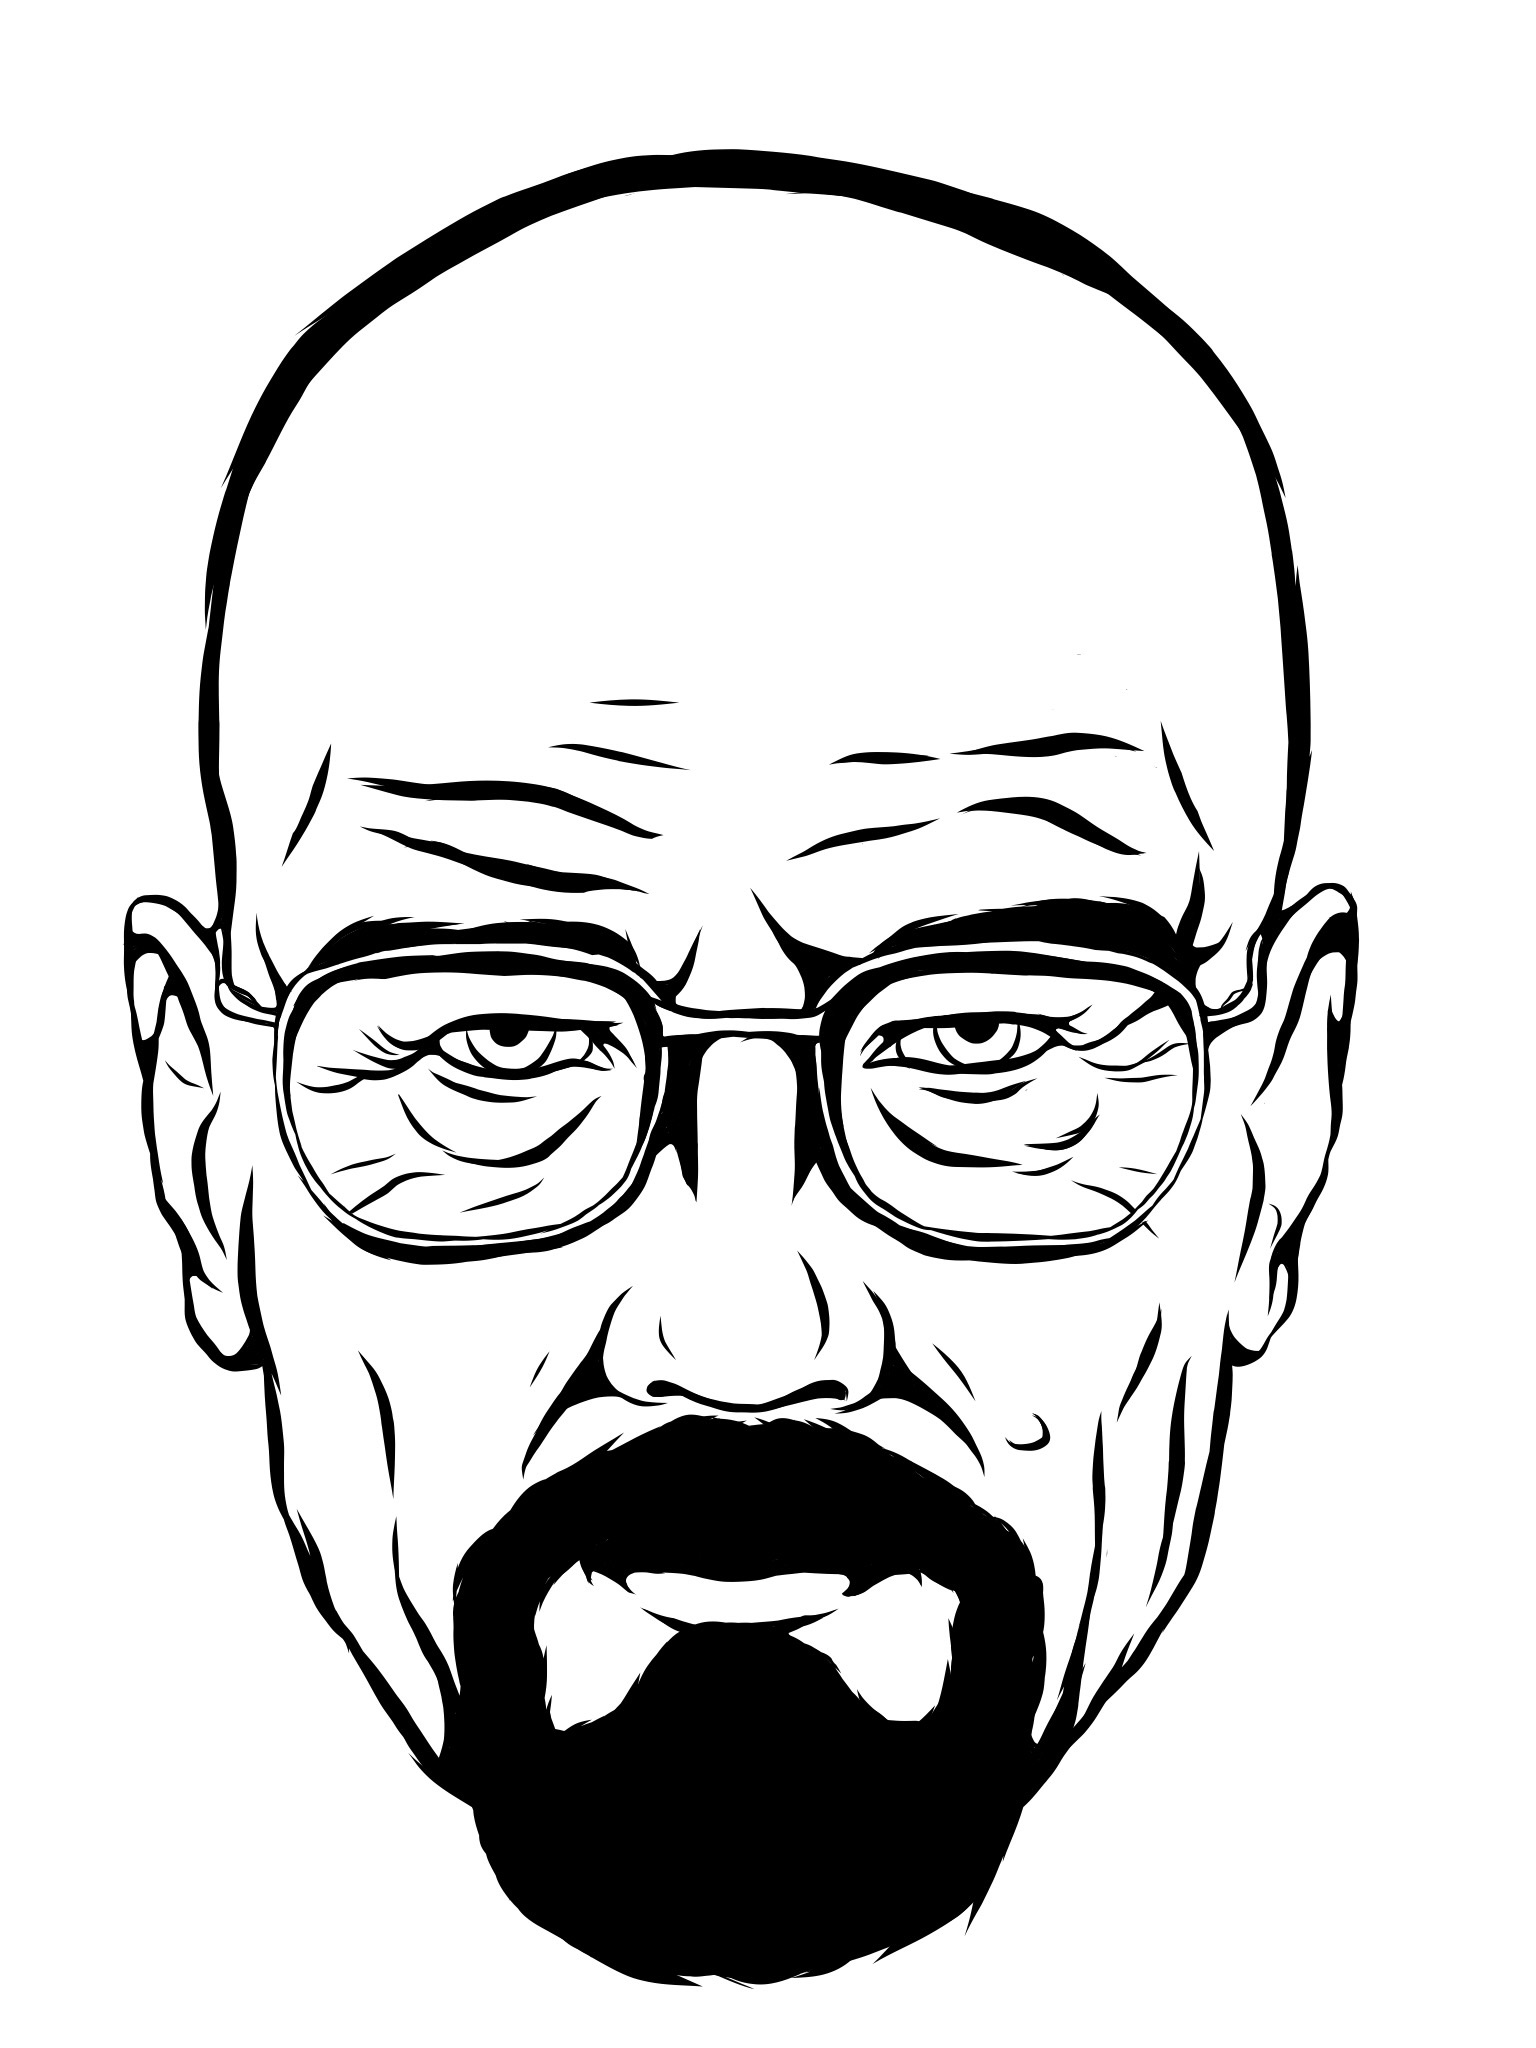 Breaking Bad Drawing Of Heisenberg - Breaking Bad: Heisenberg Ii By ...